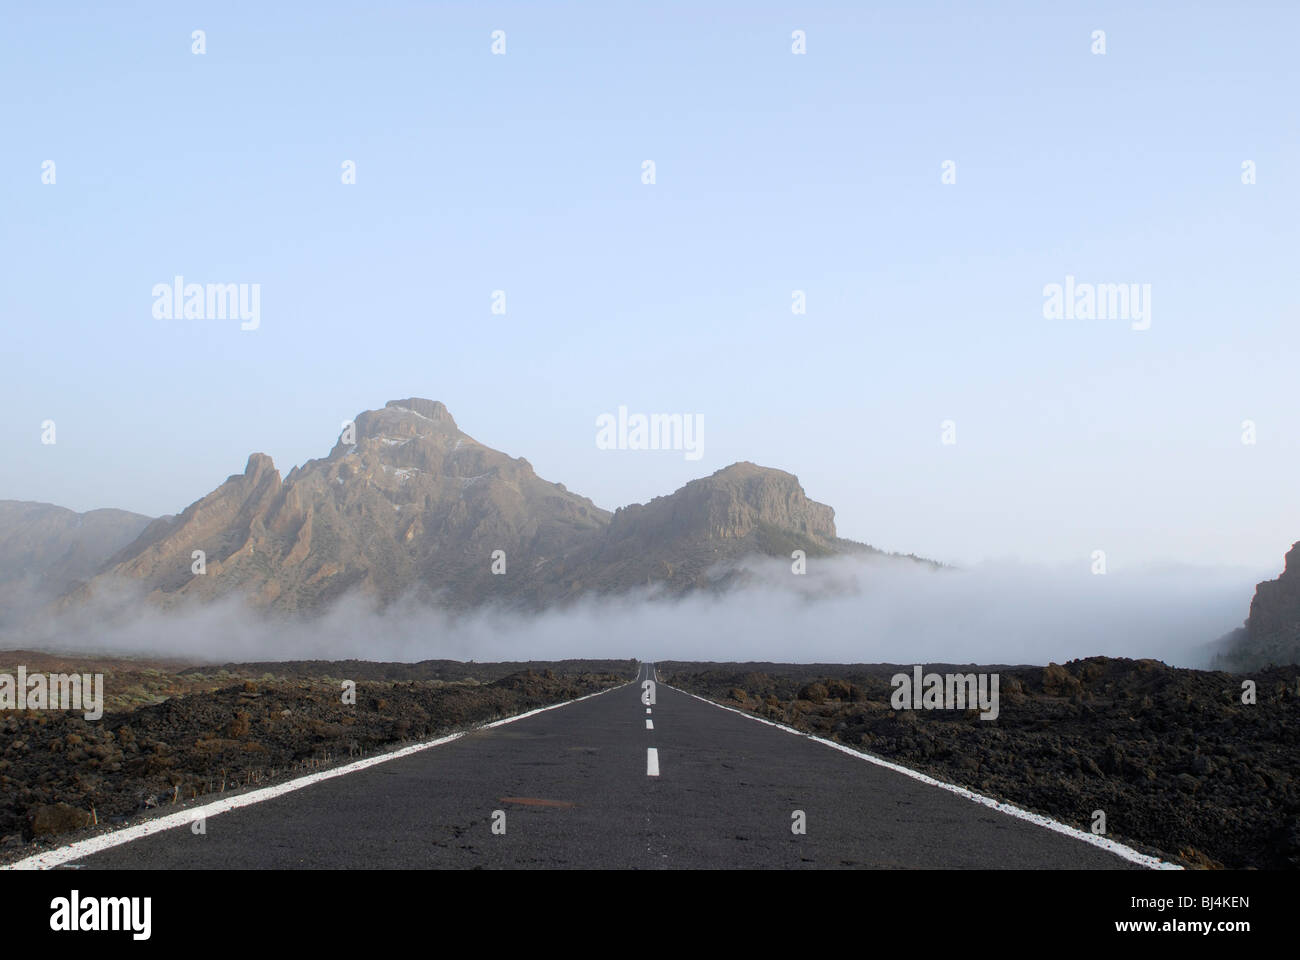 Spagna Isole Canarie Tenerife Teide Il Parco Nazionale del Vulcano, paesaggio con road, montagne, salendo la nebbia Foto Stock